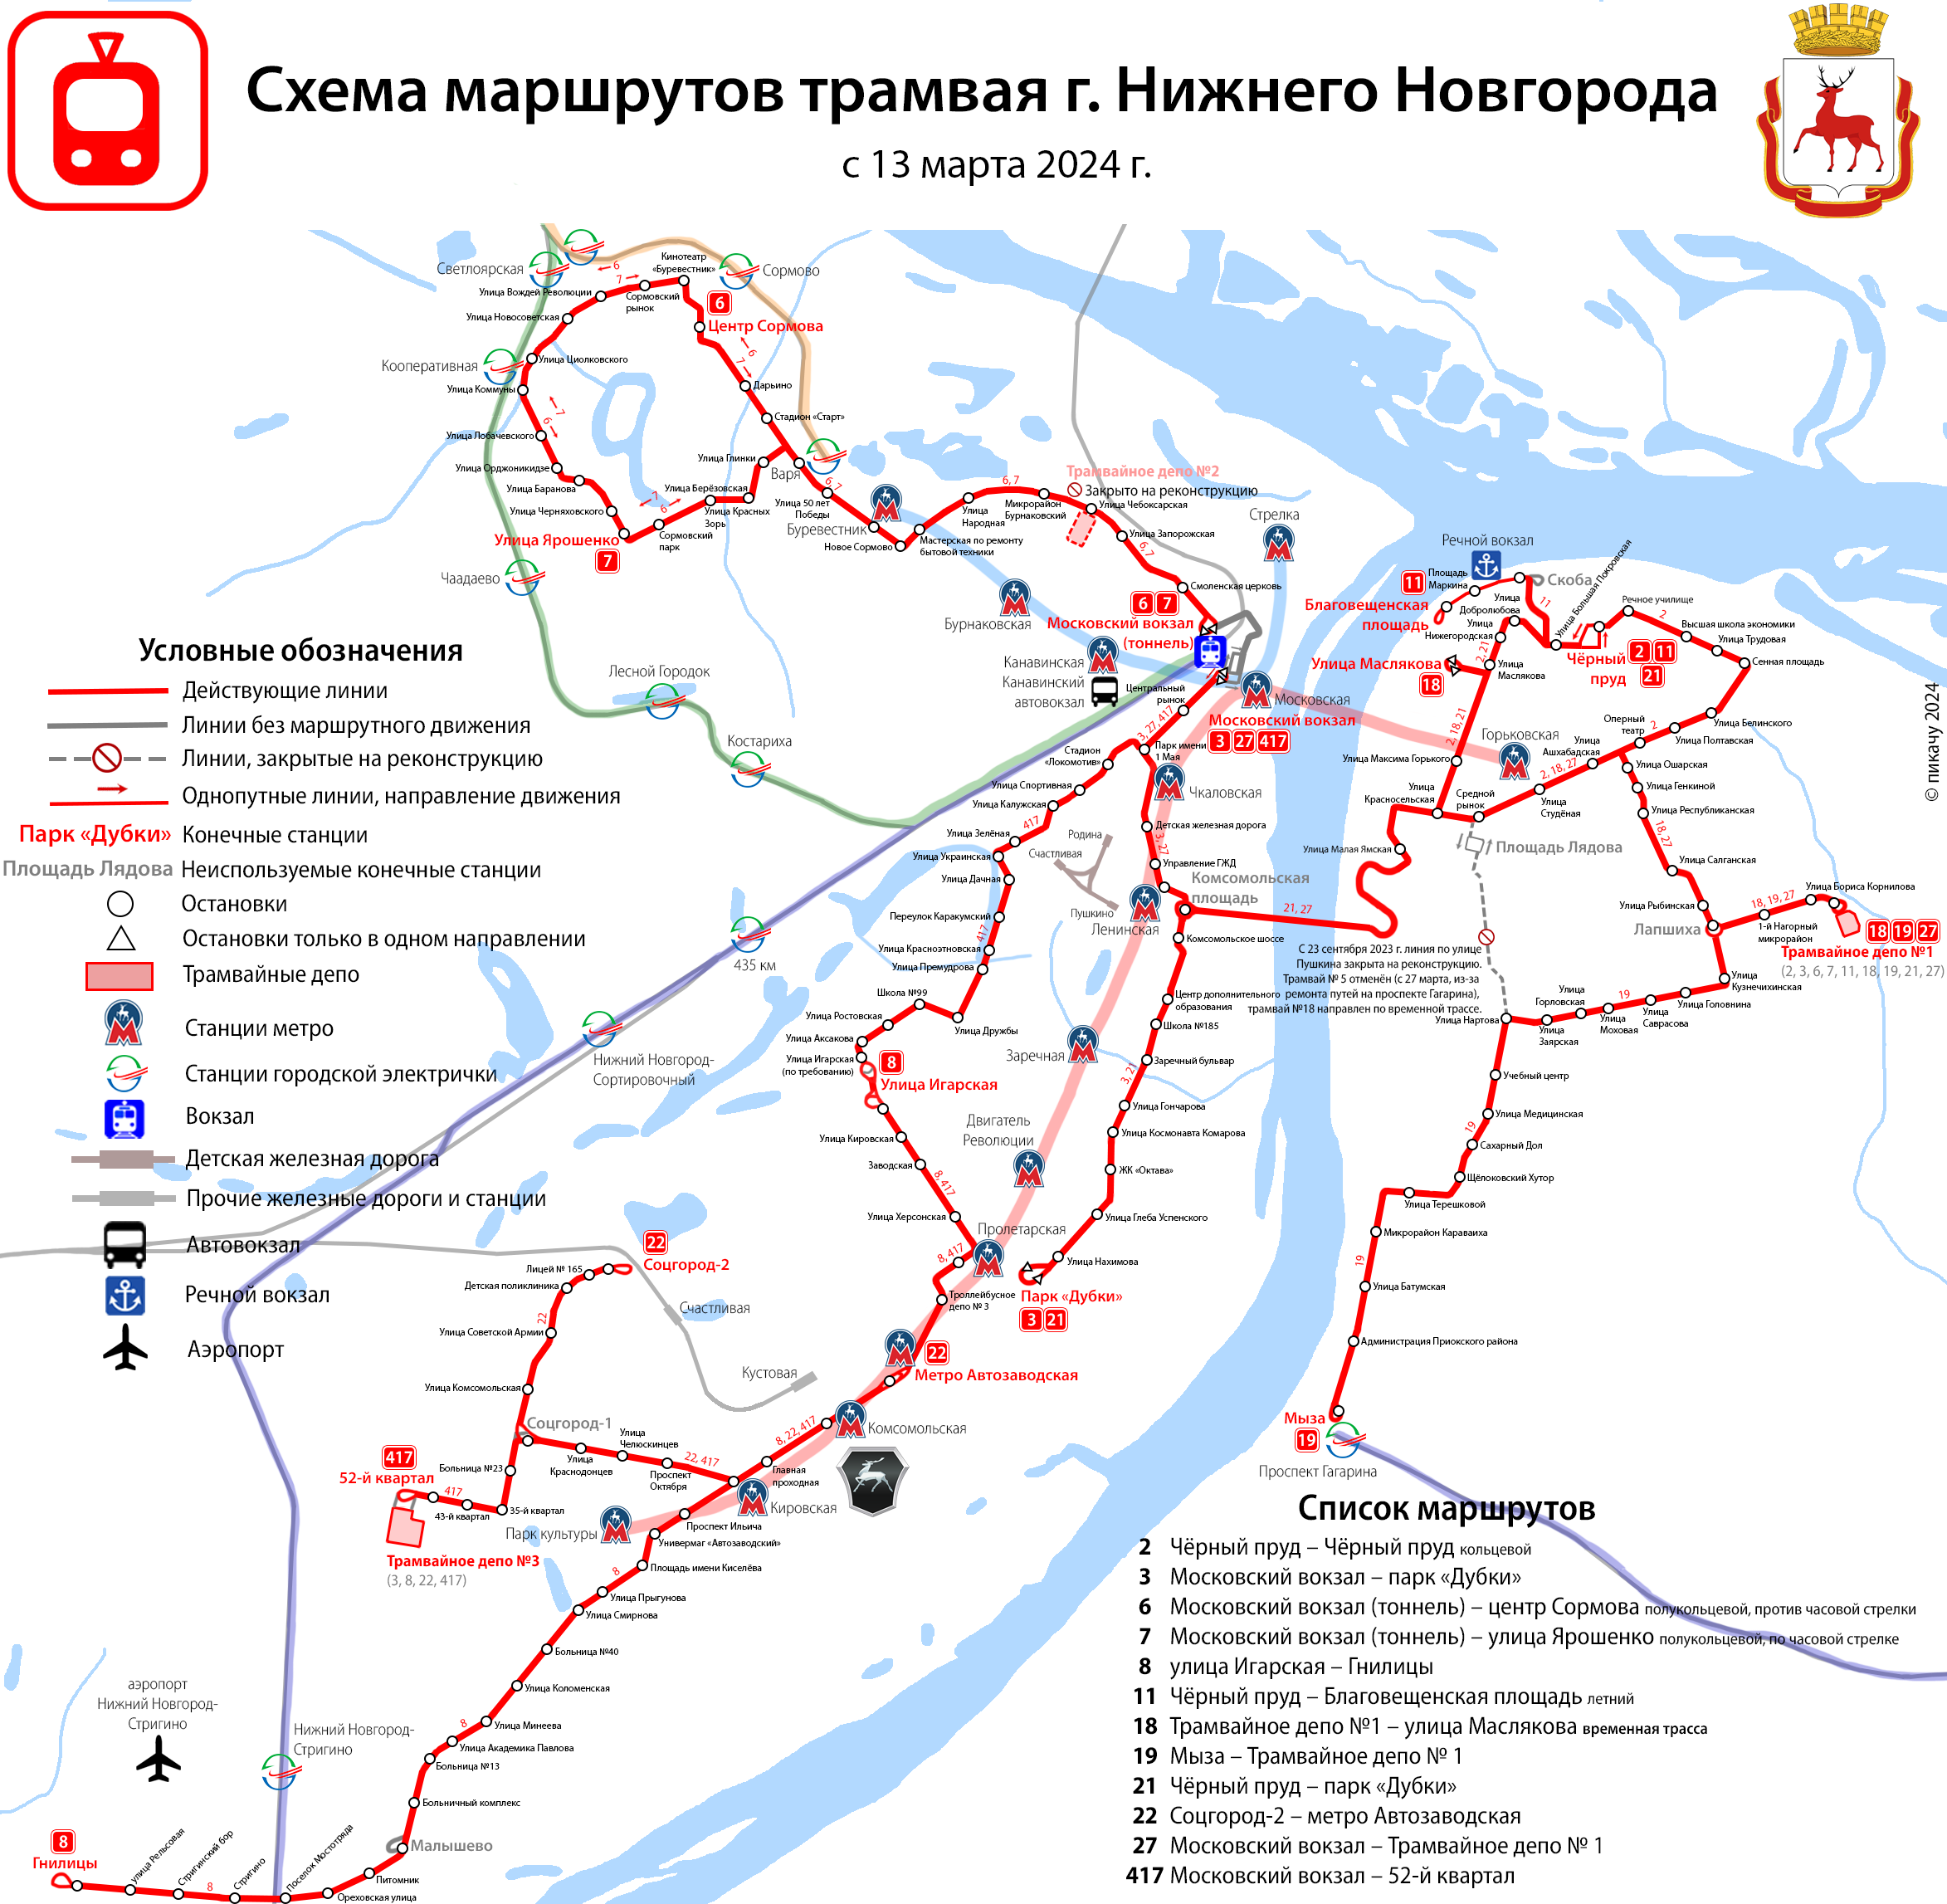 Nijni Novgorod — Maps